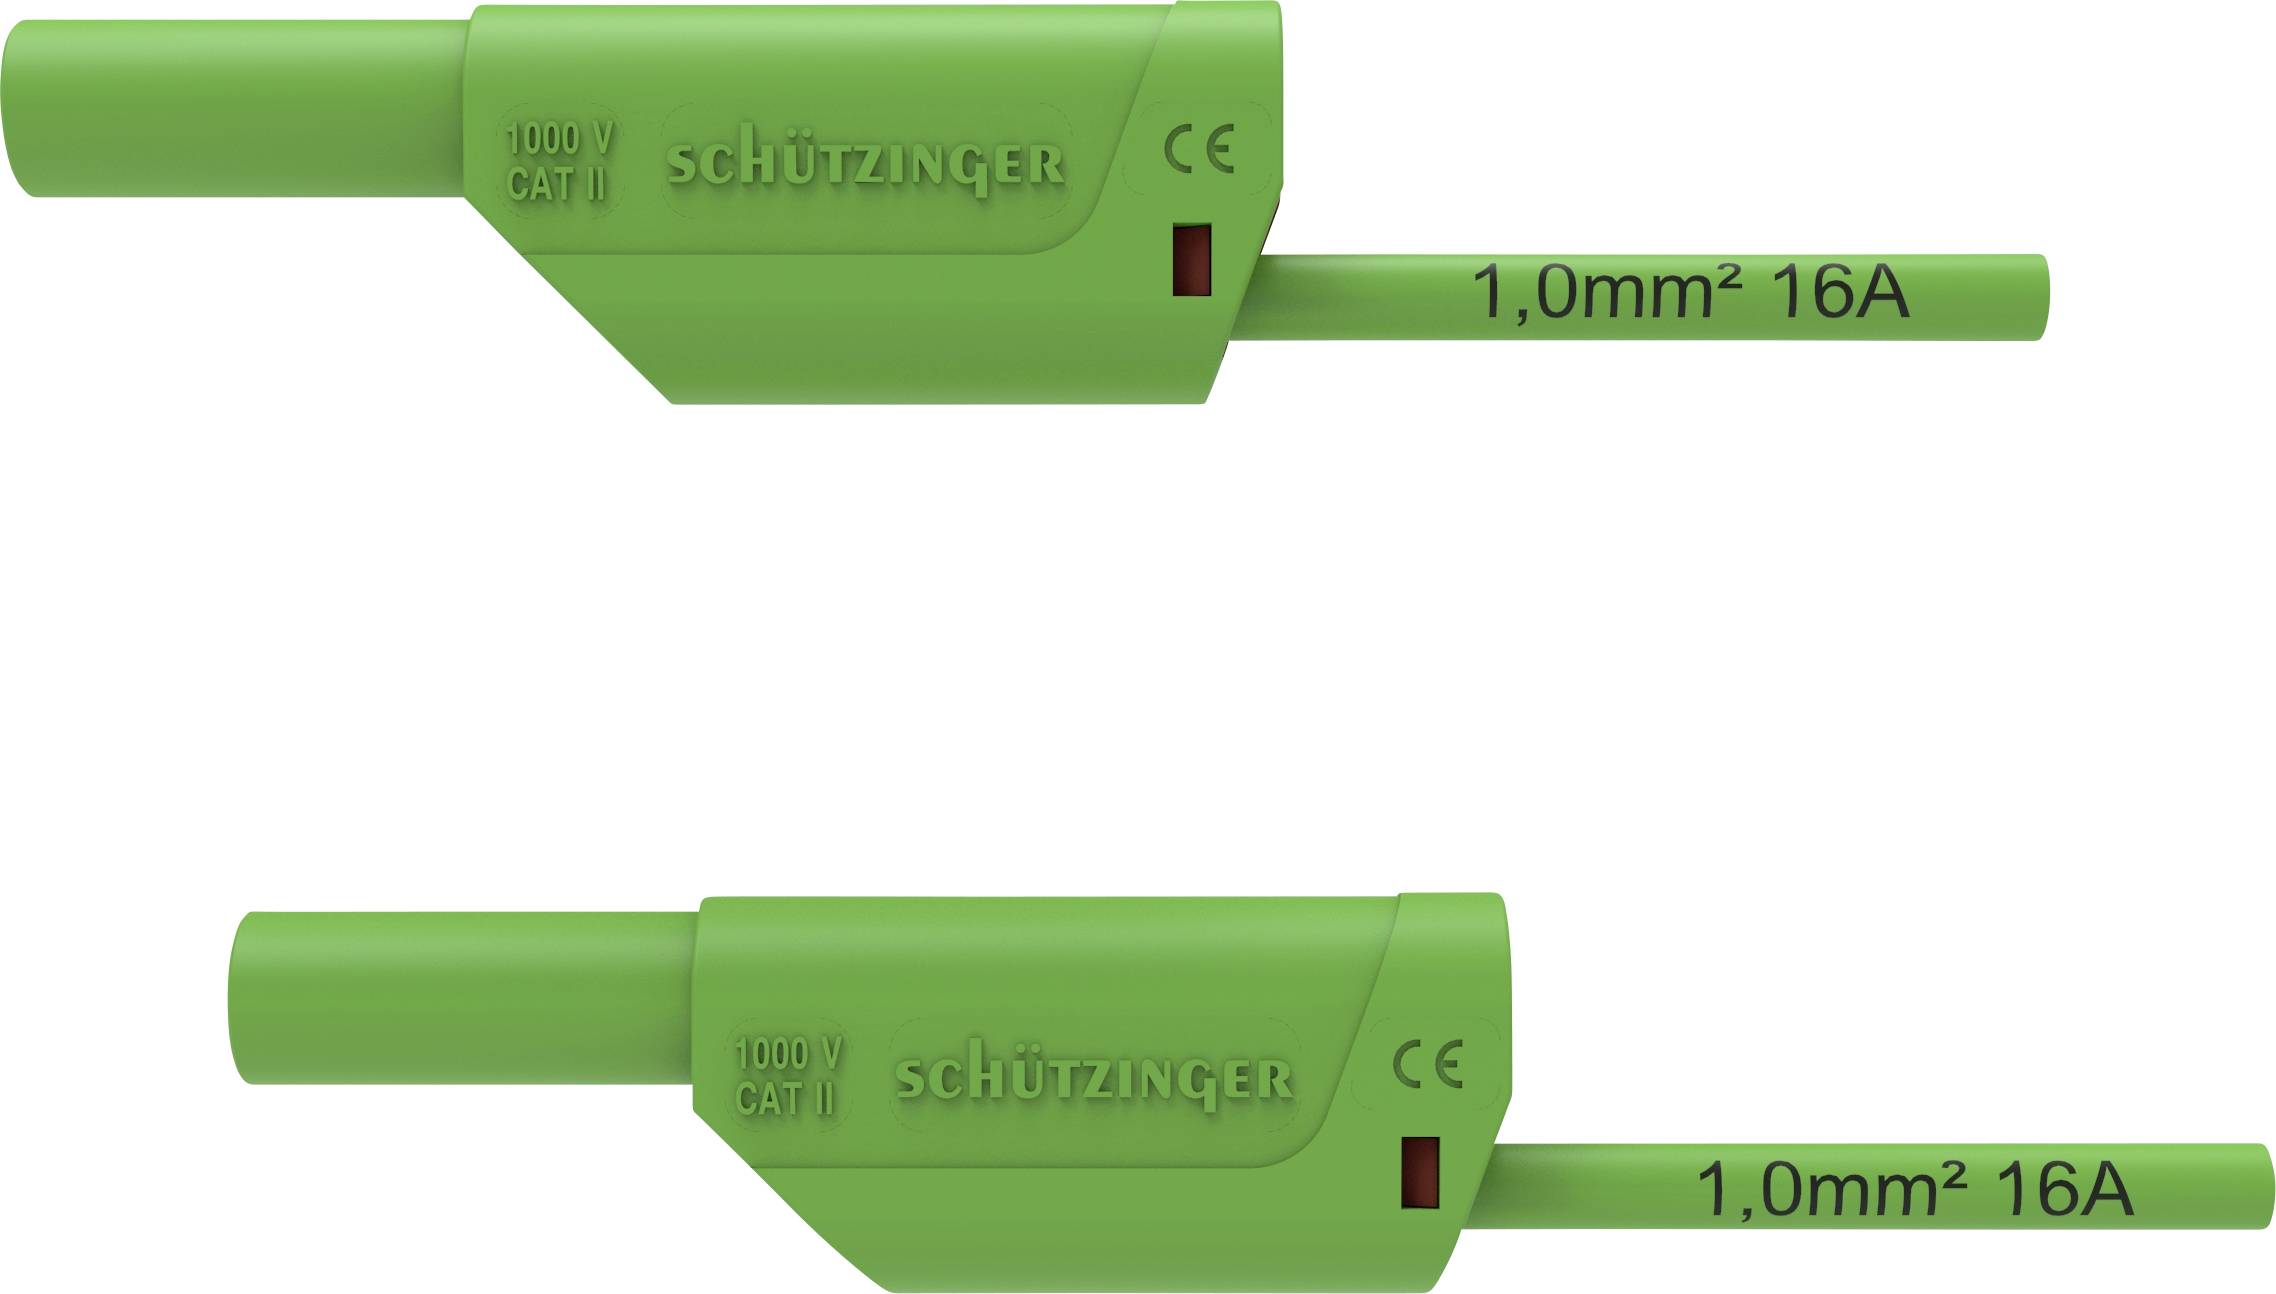 SCHÜTZINGER VSFK 8500 / 1 / 100 / GN Sicherheits-Messleitung [4 mm-Stecker - 4 mm-Stecker] 100.